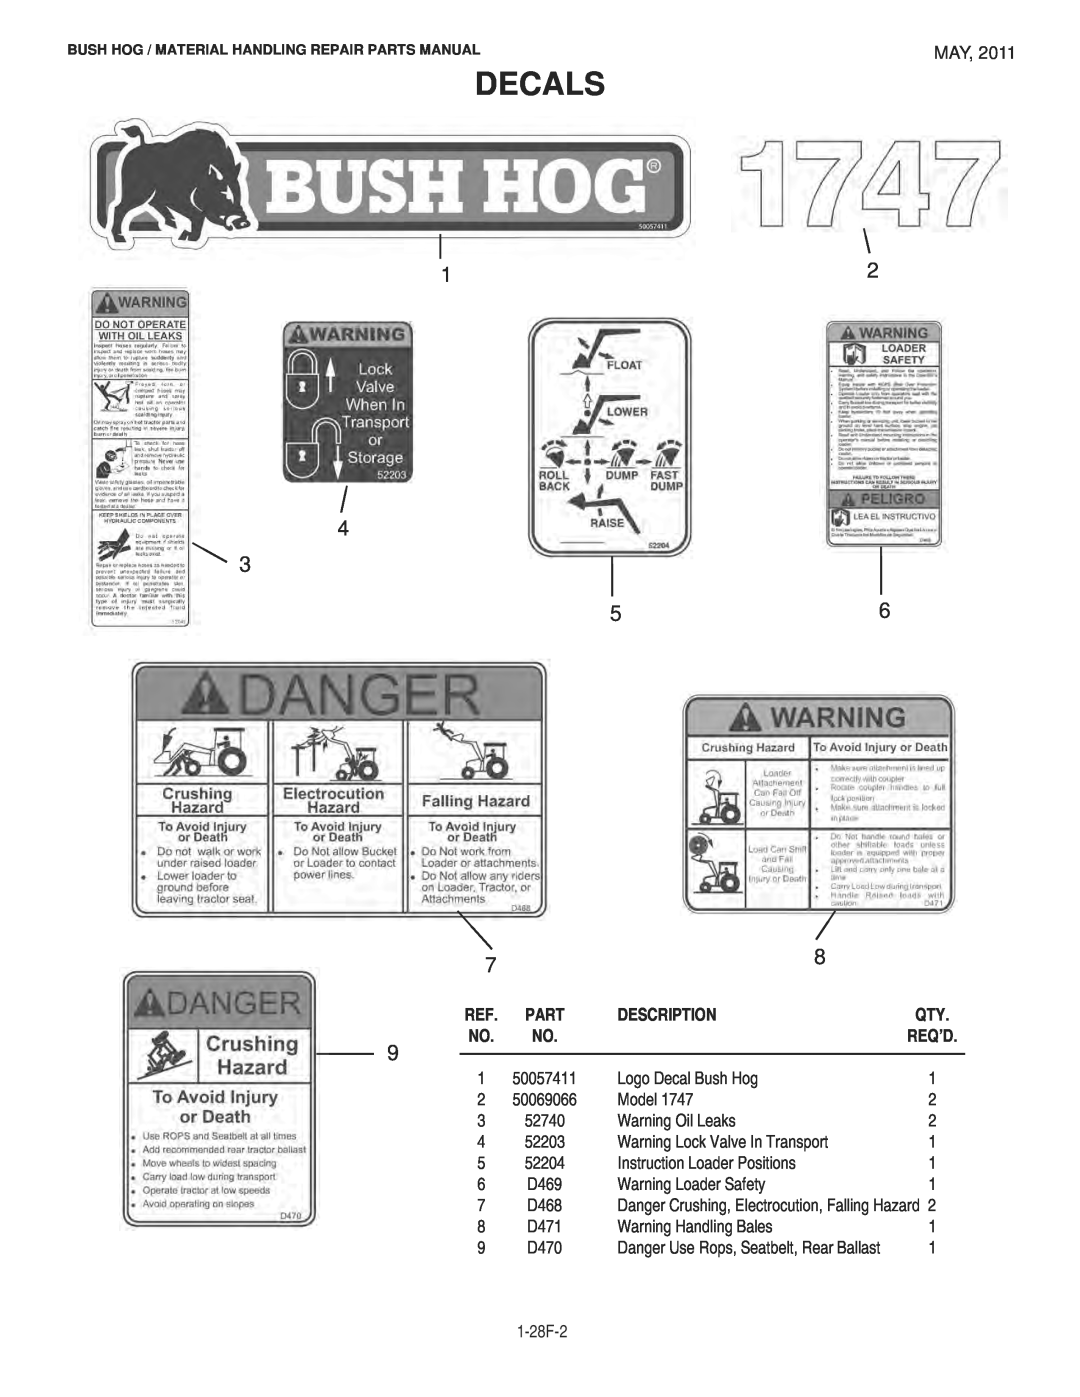 Bush Hog 1747 manual Decals, Description, Bush Hog / Material Handling Repair Parts Manual, Req’D 